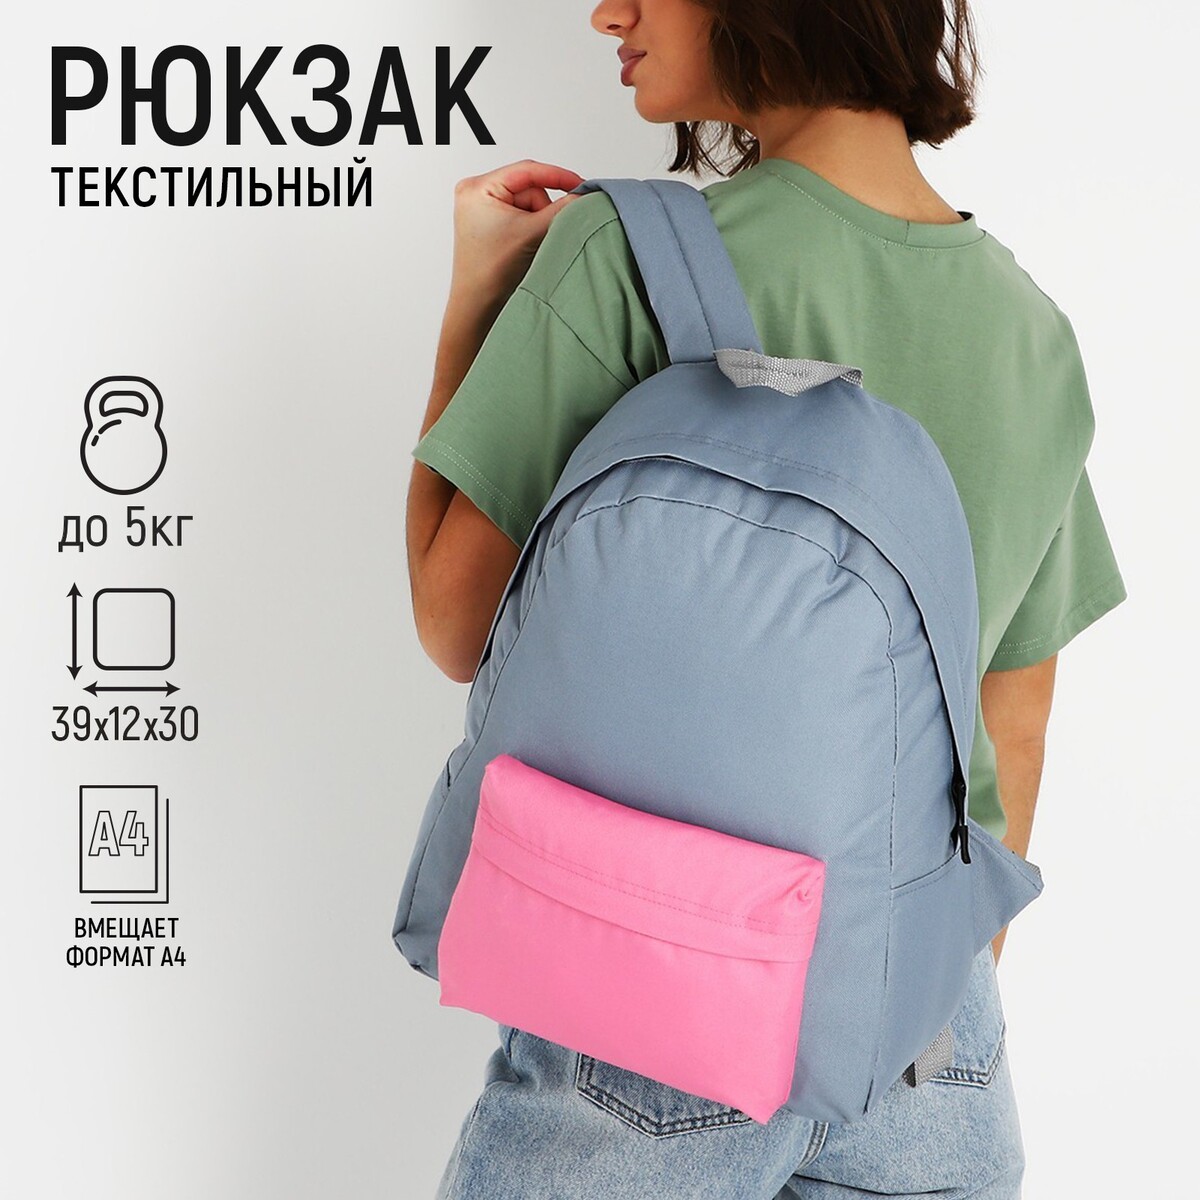 Рюкзак текстильный с цветным карманом, 30х39х12 см, серый/розовый рюкзак текстильный с ным карманом 30х39х12 см бордовый